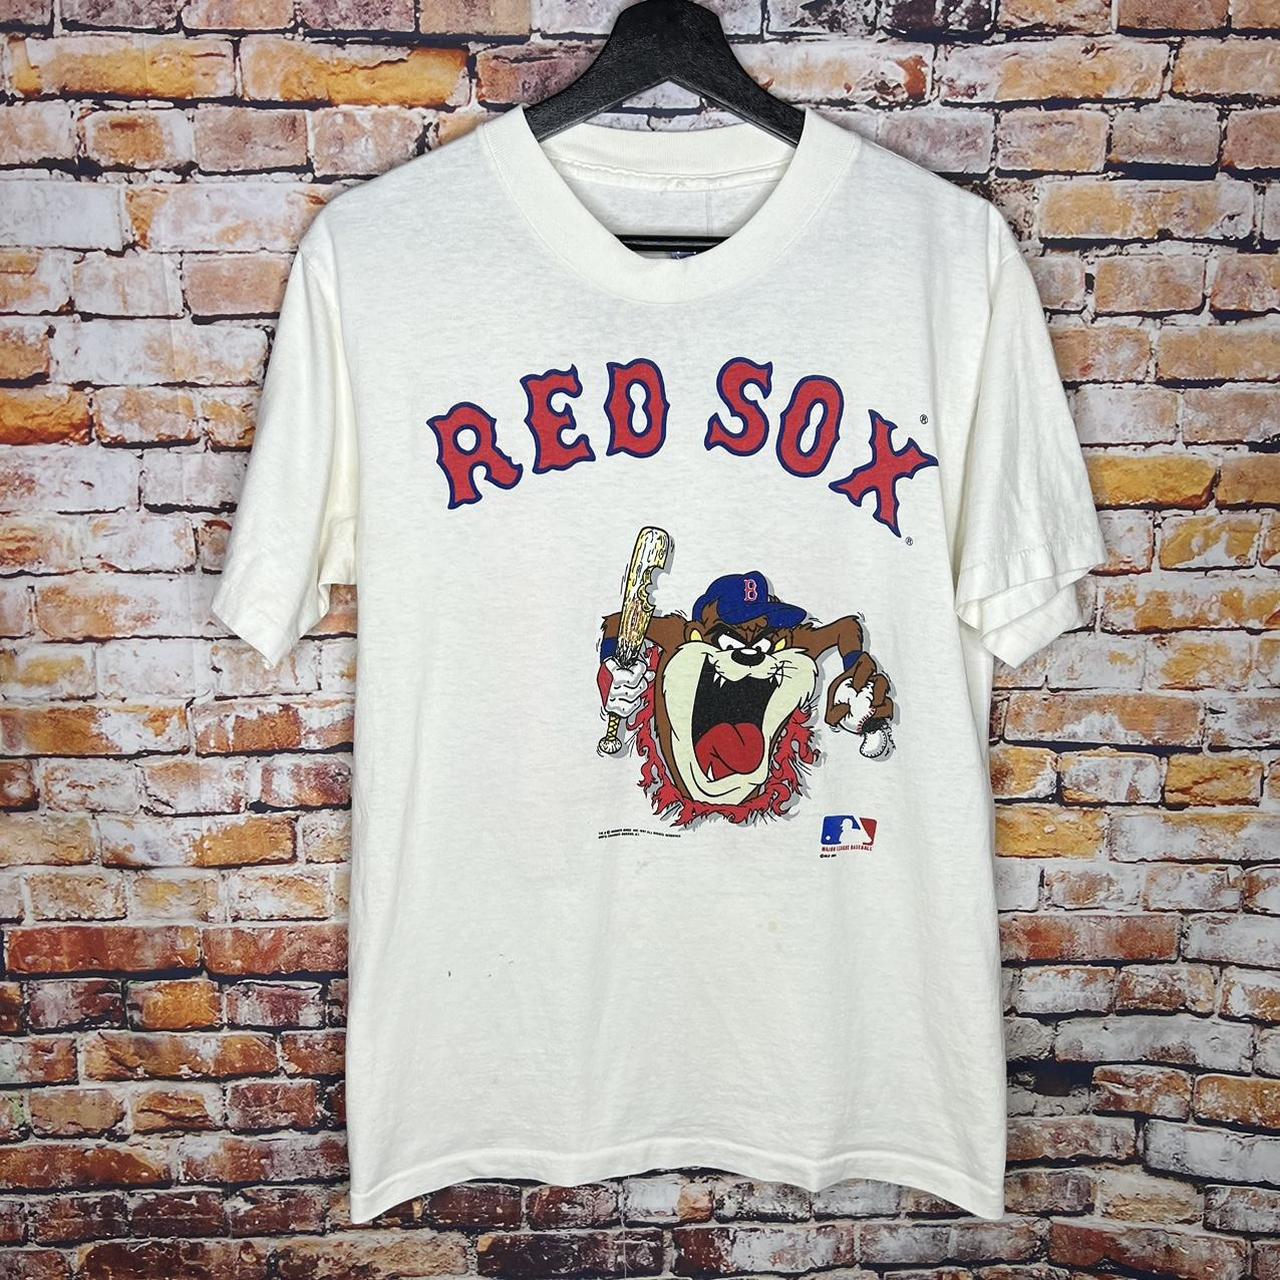 red sox baseball t shirt vintage